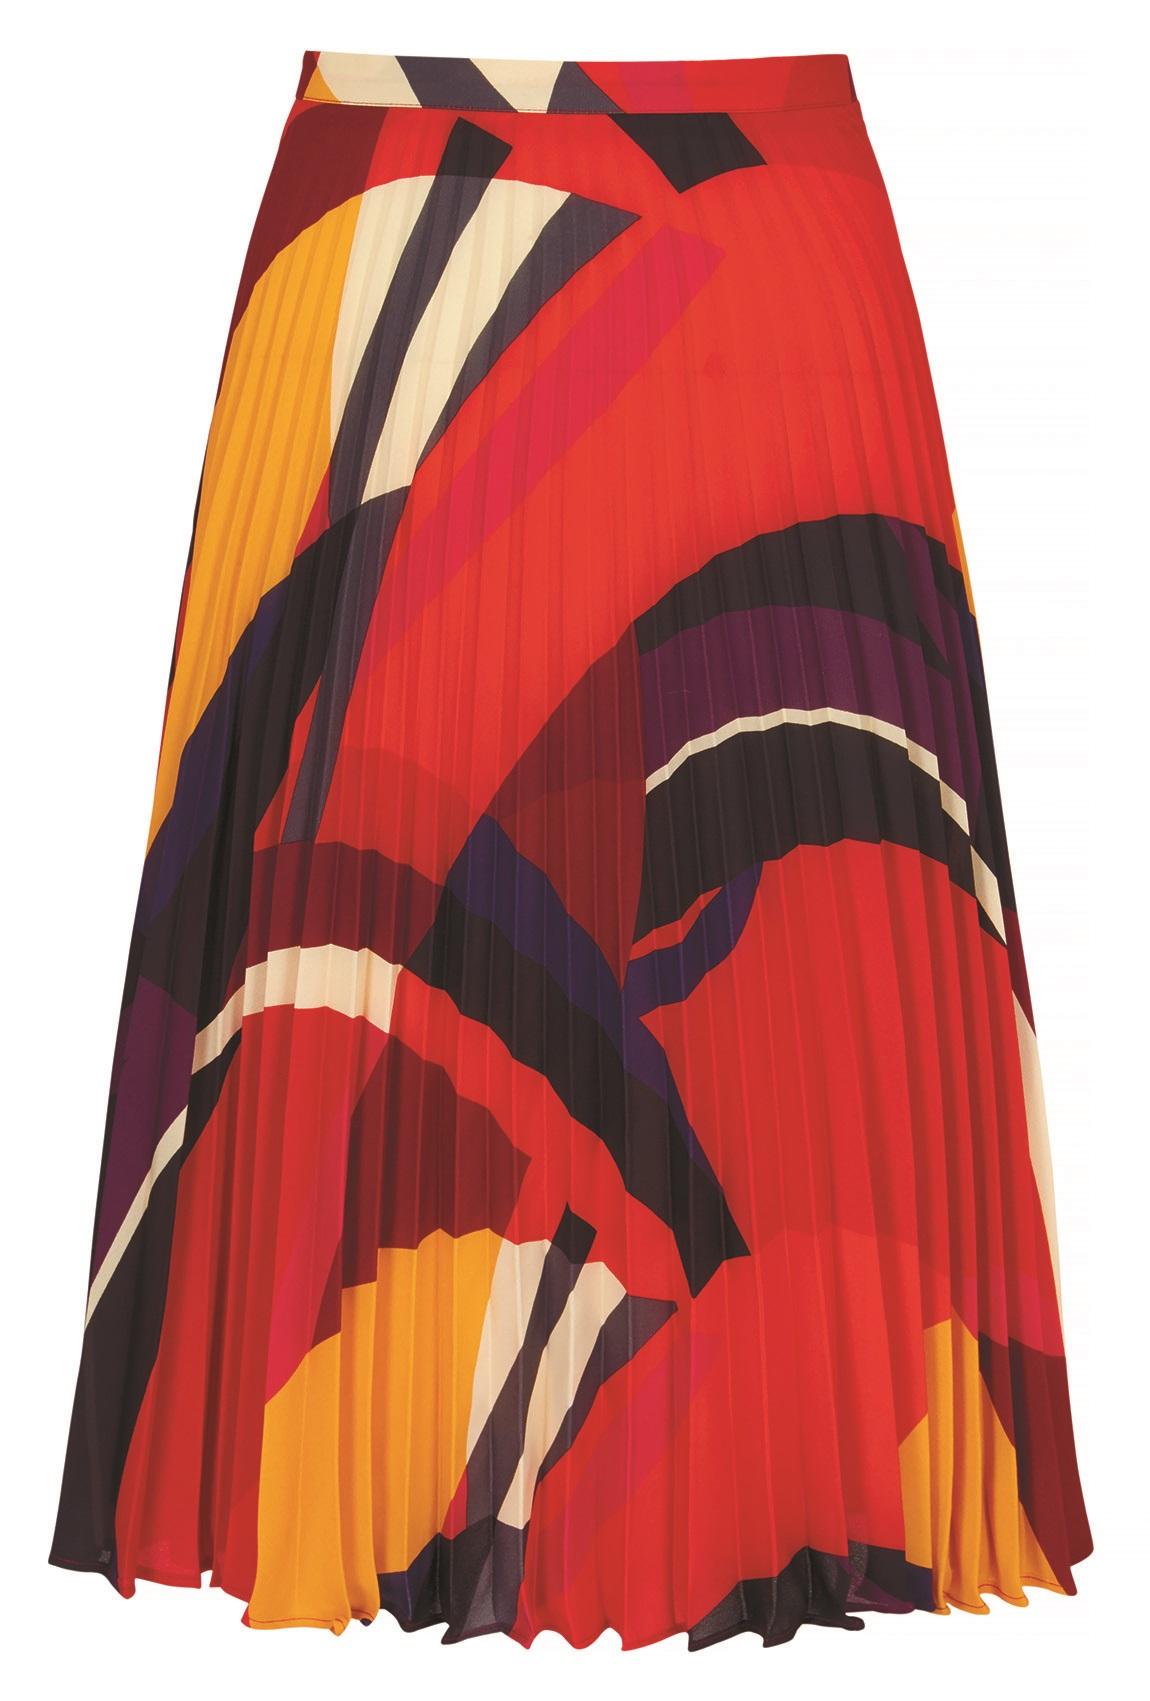 V By Very, Printed Midi Skirt, £35